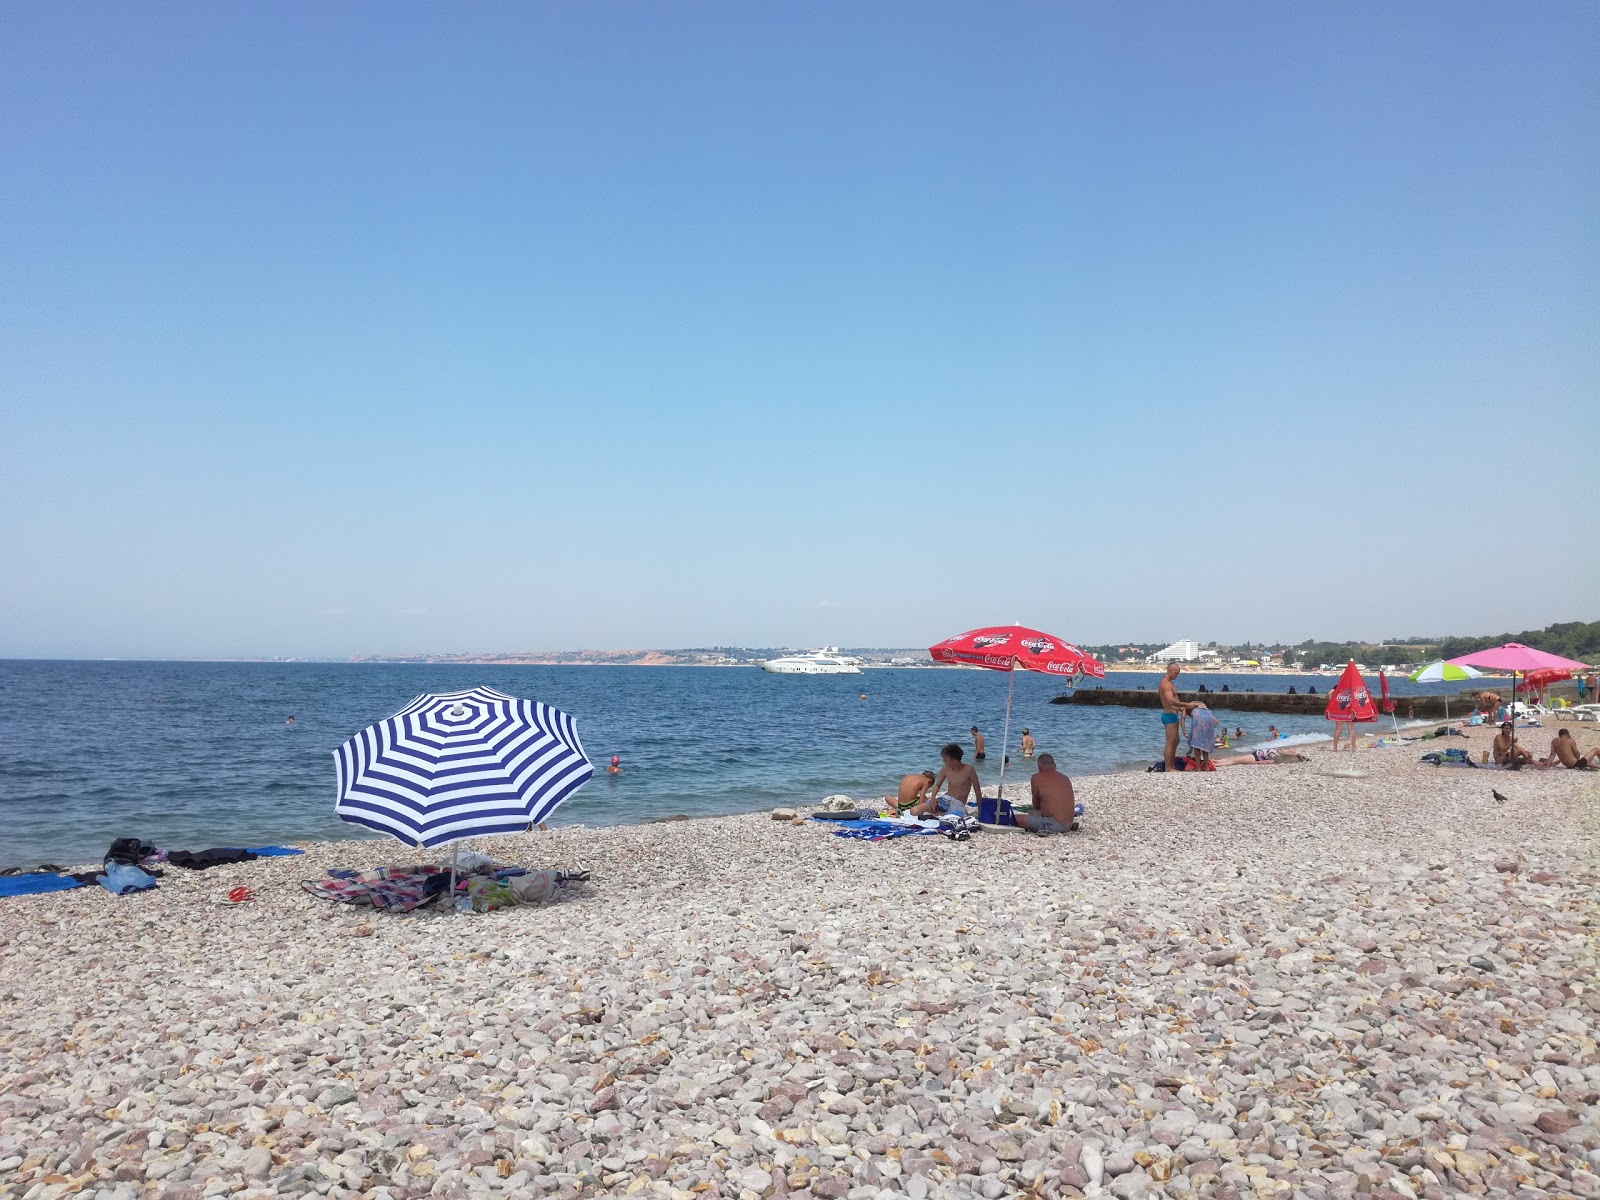 Tolstyak beach'in fotoğrafı hafif çakıl yüzey ile